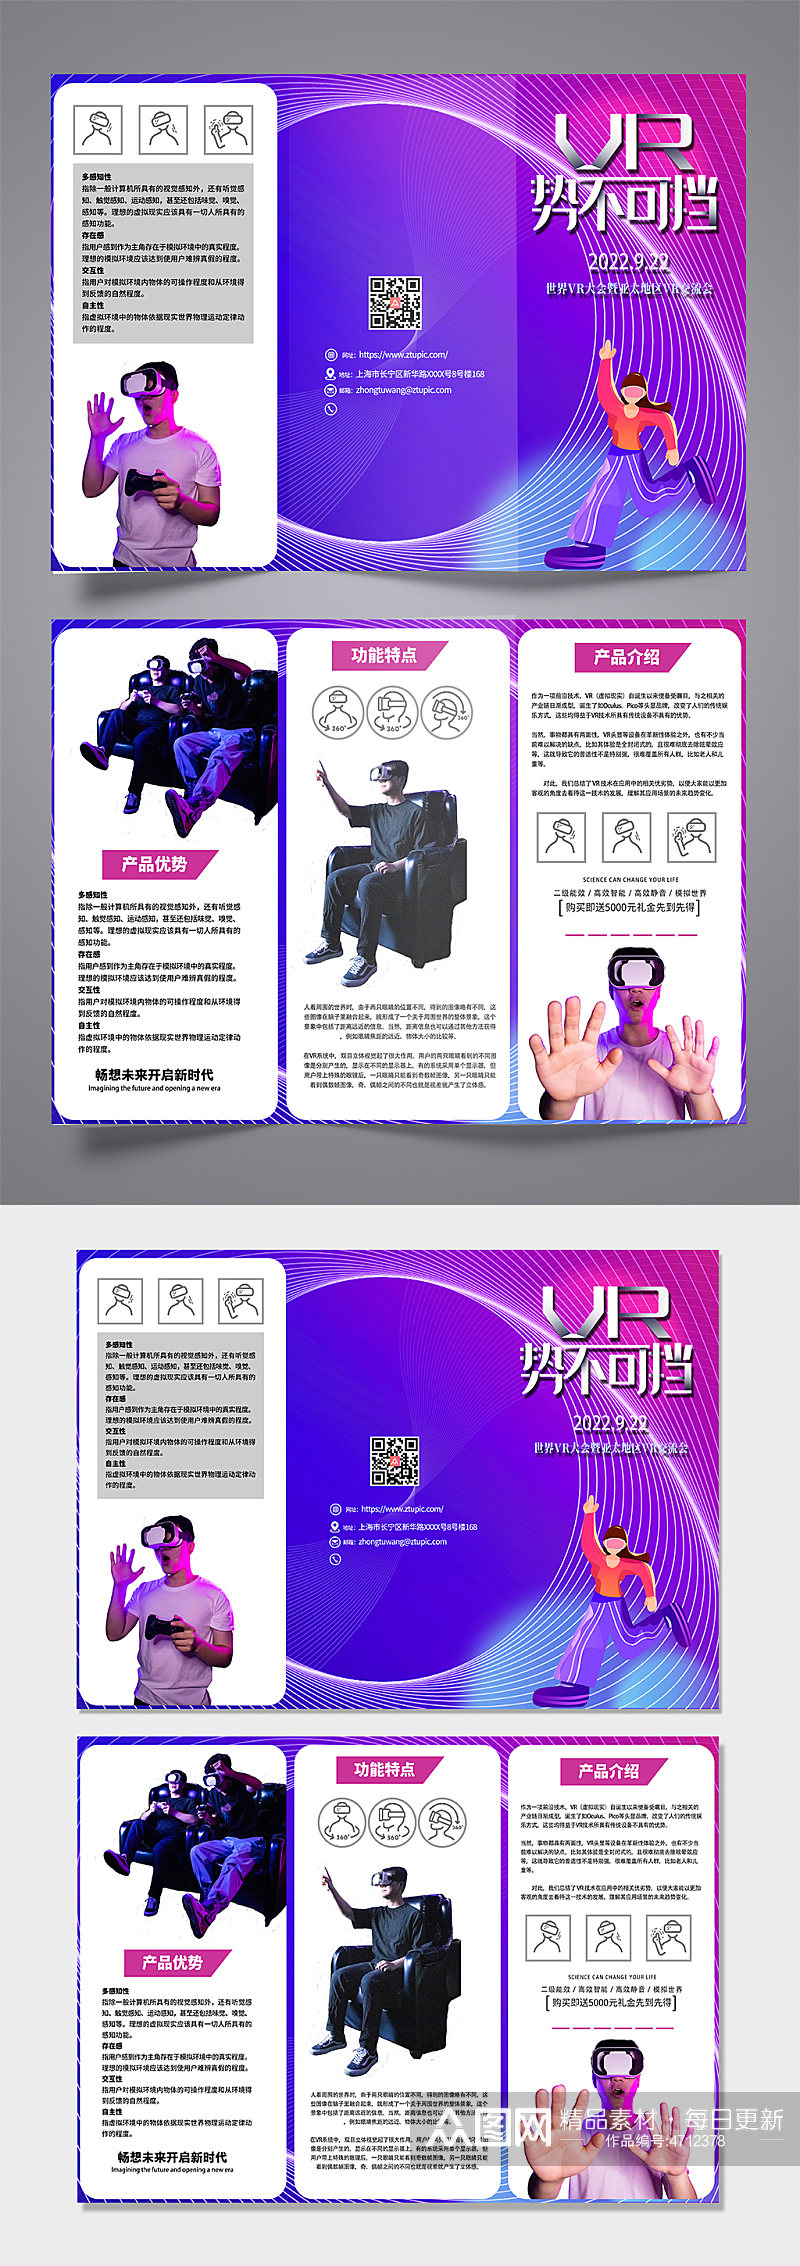 紫色大气VR虚拟现实体验馆宣传三折页素材